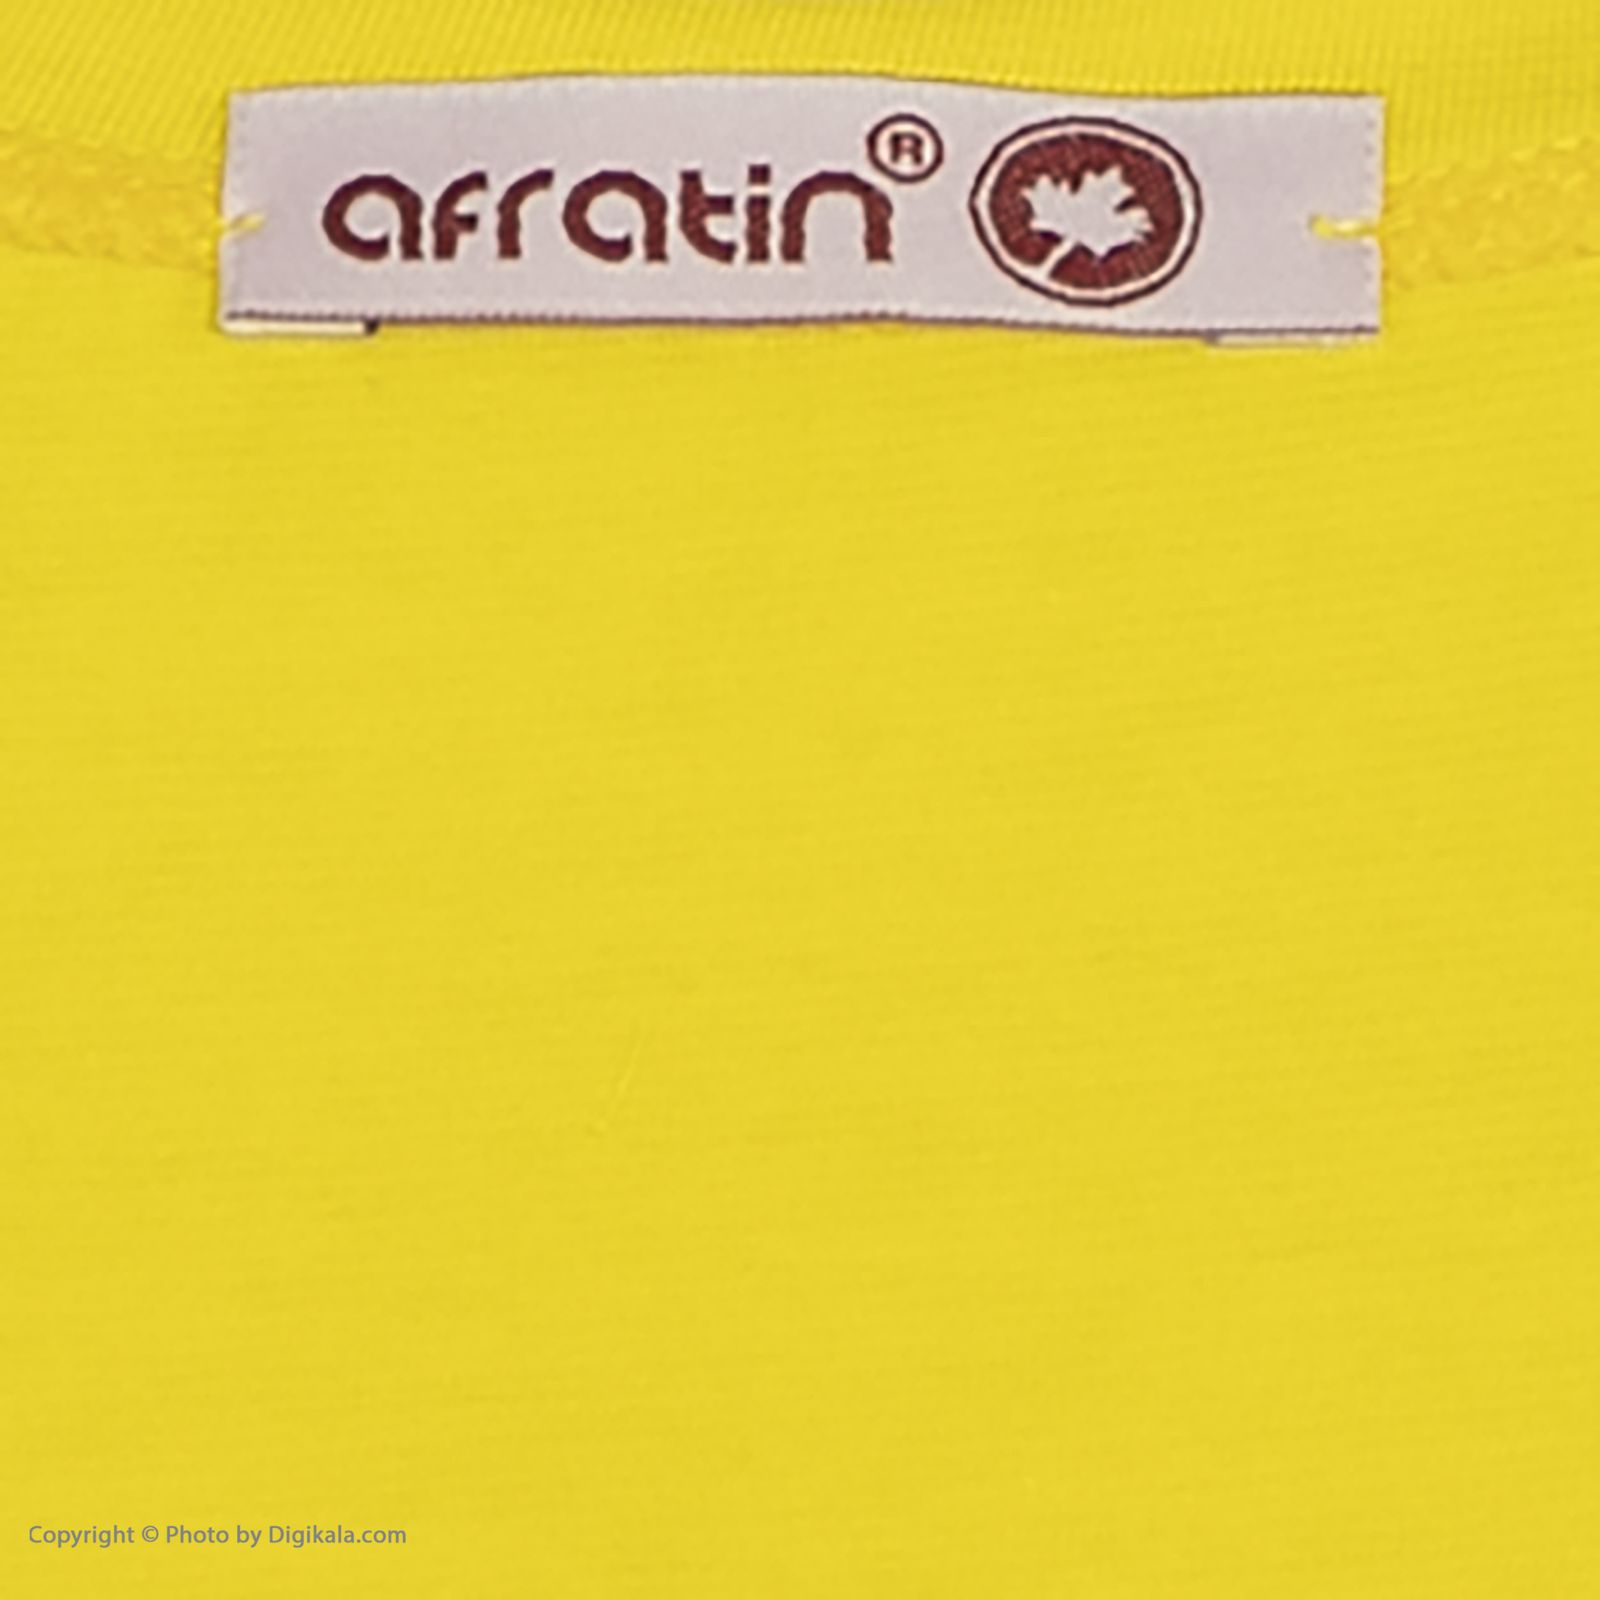 ست تی شرت و شلوارک زنانه افراتین مدل آلبالو کد 6557 رنگ زرد -  - 6